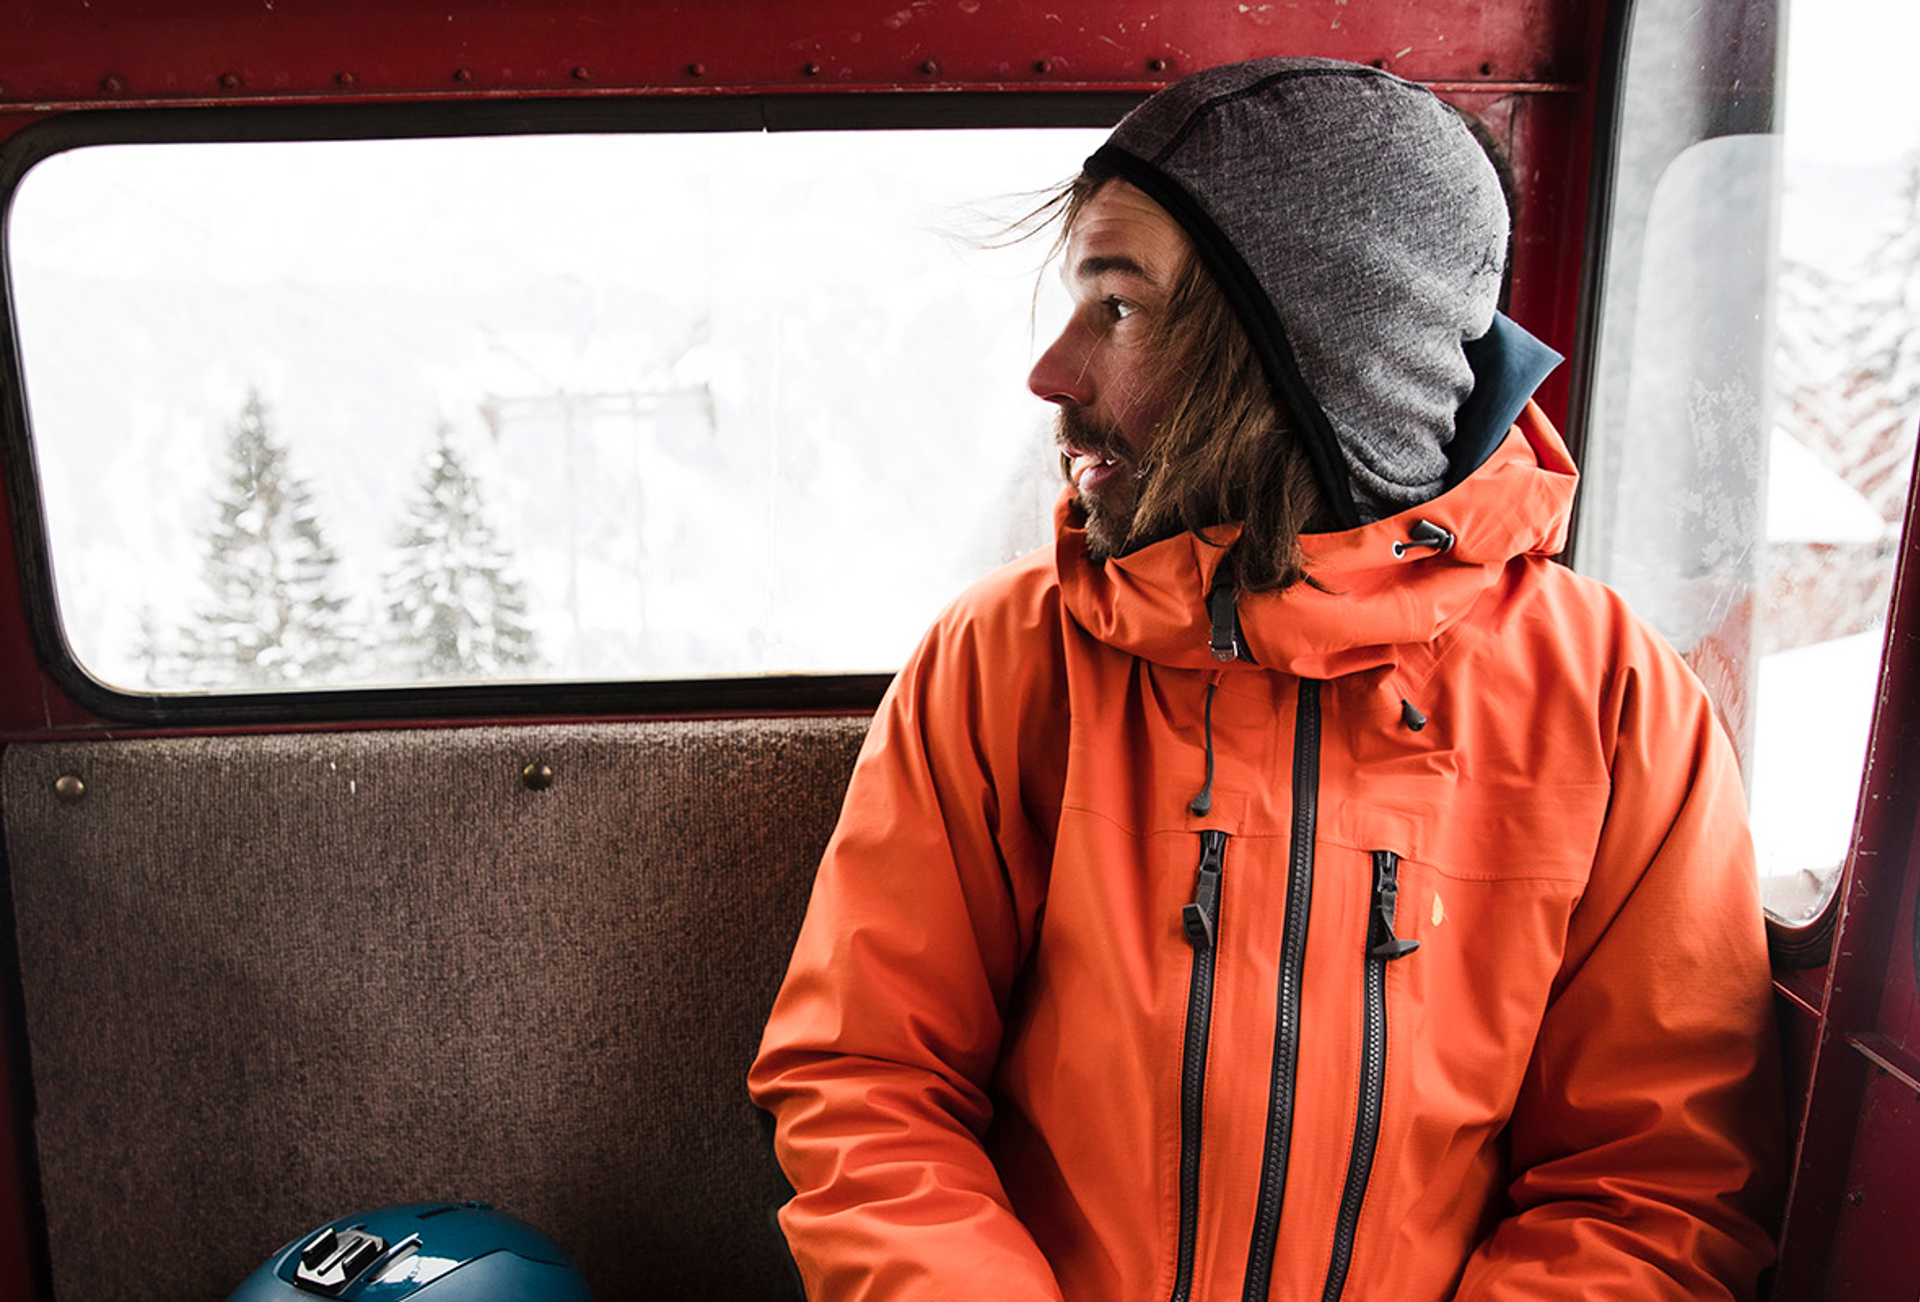 Man riding in snowcat looking outside in orange jacket